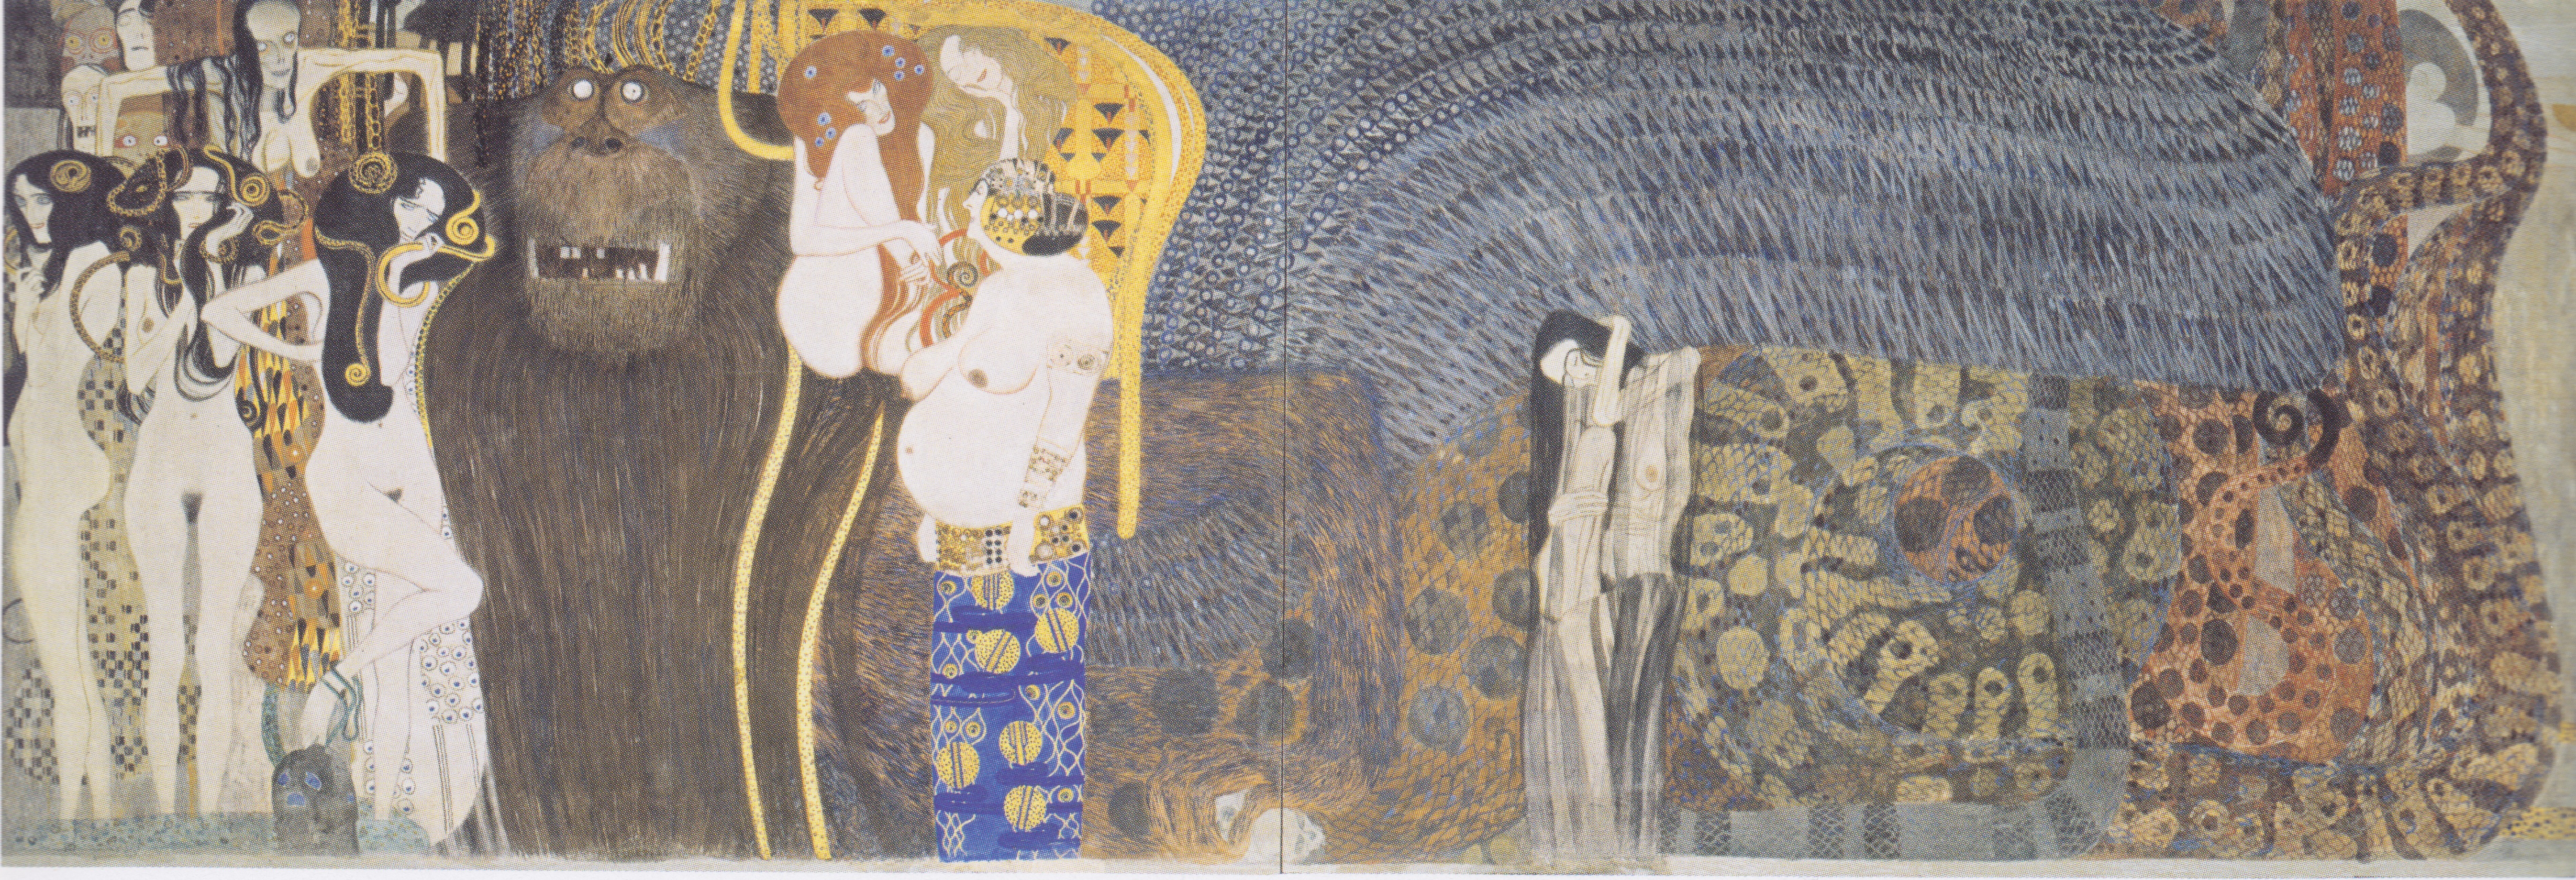 Gustav Klimt - The Beethoven Frieze: The Hostile Powers. Far Wall 1902